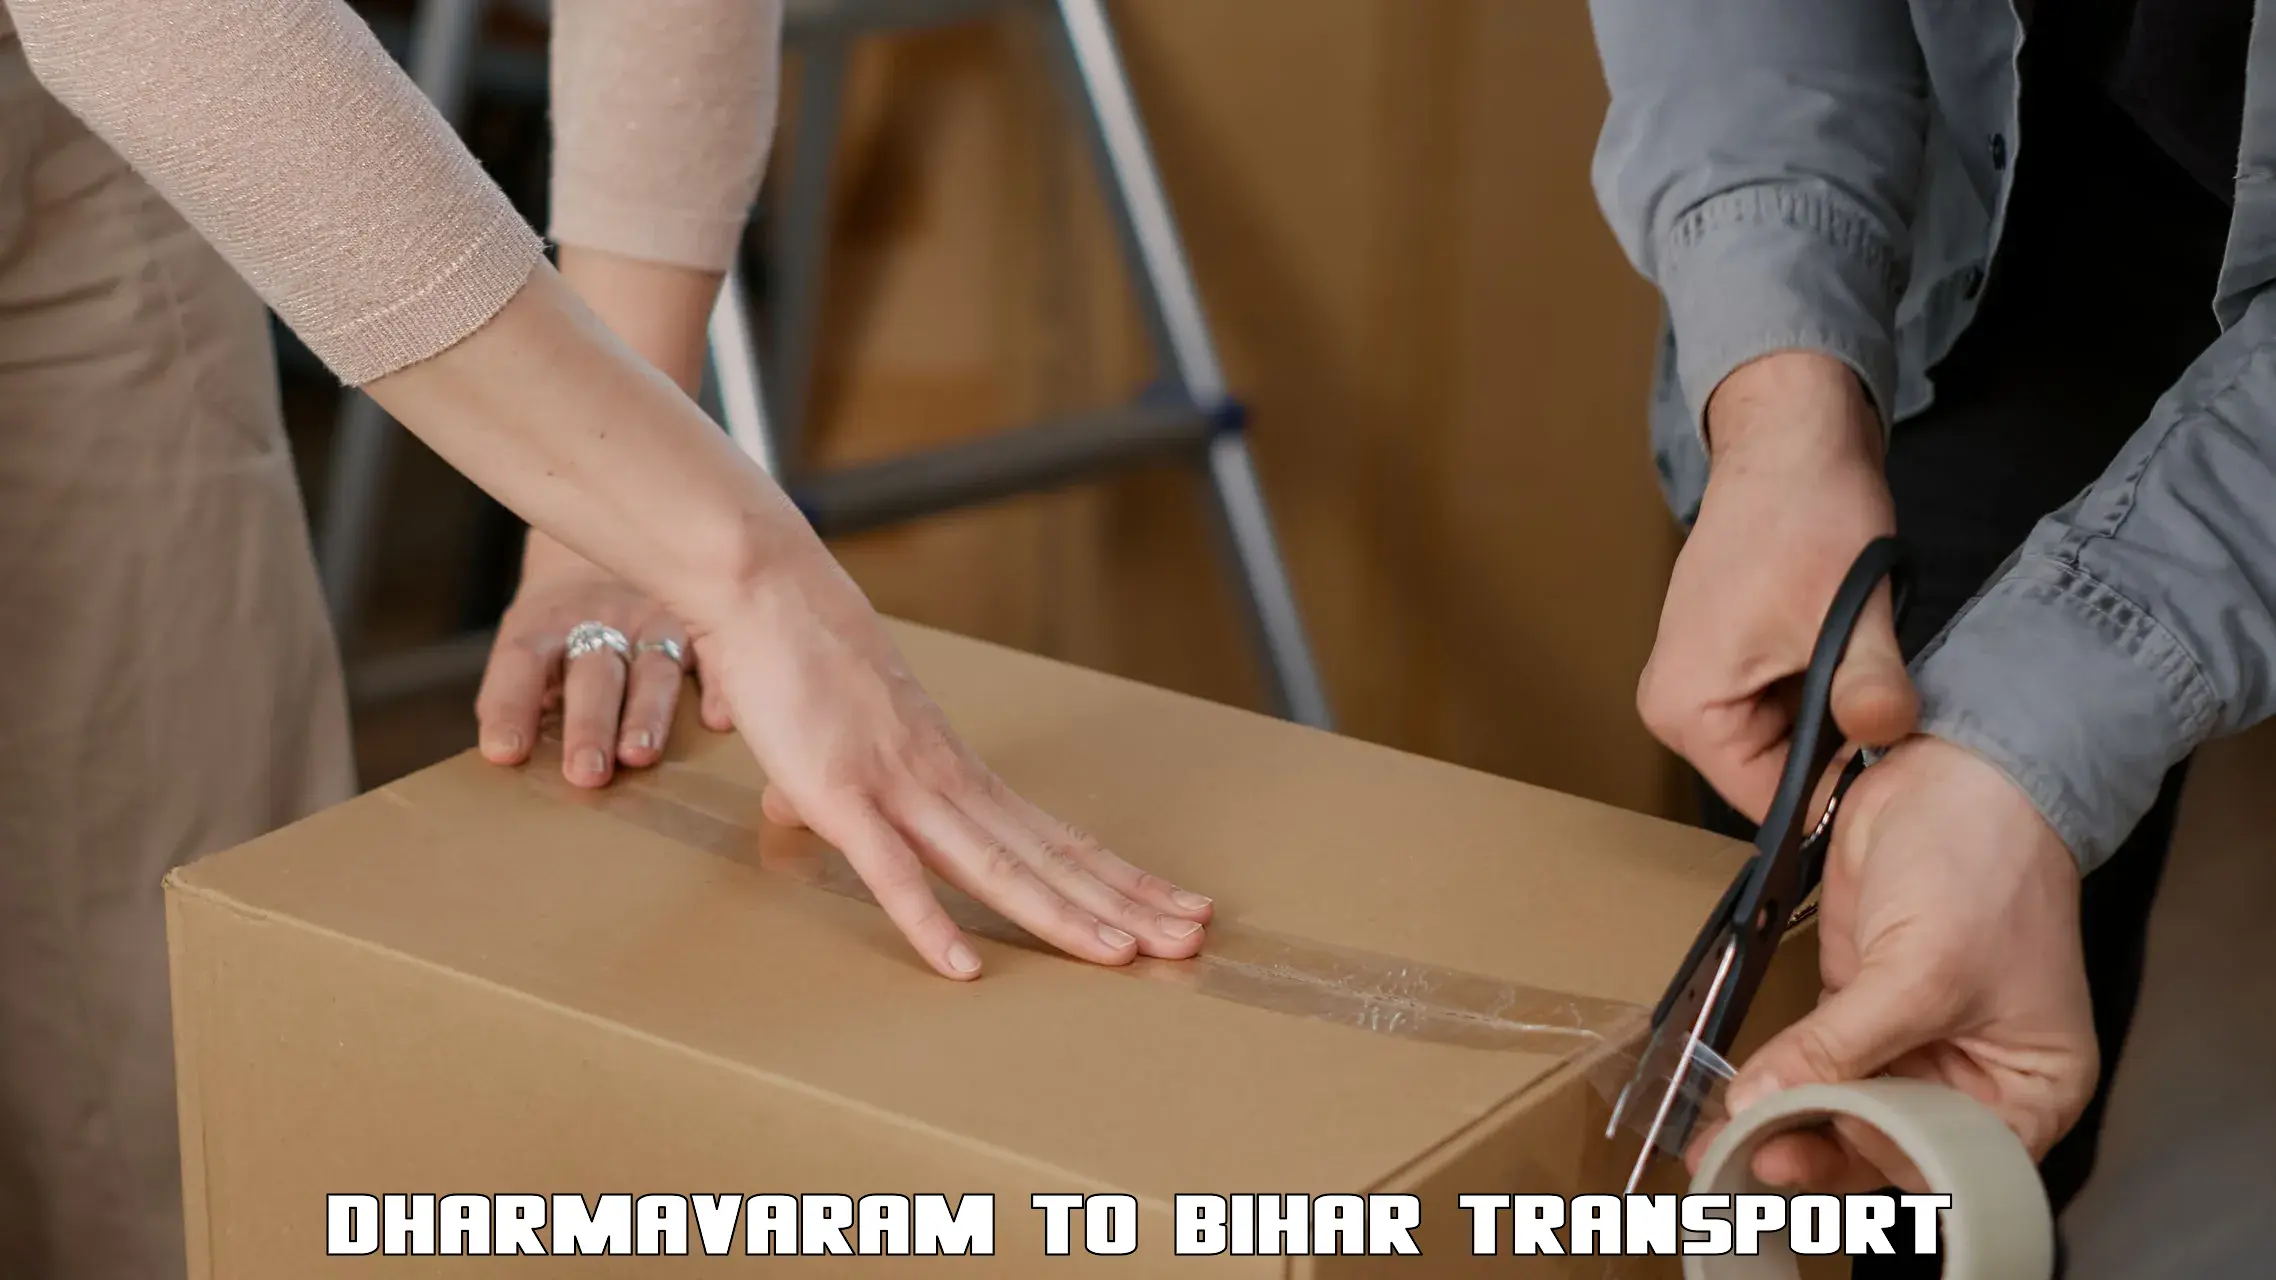 Transport in sharing Dharmavaram to Muzaffarpur